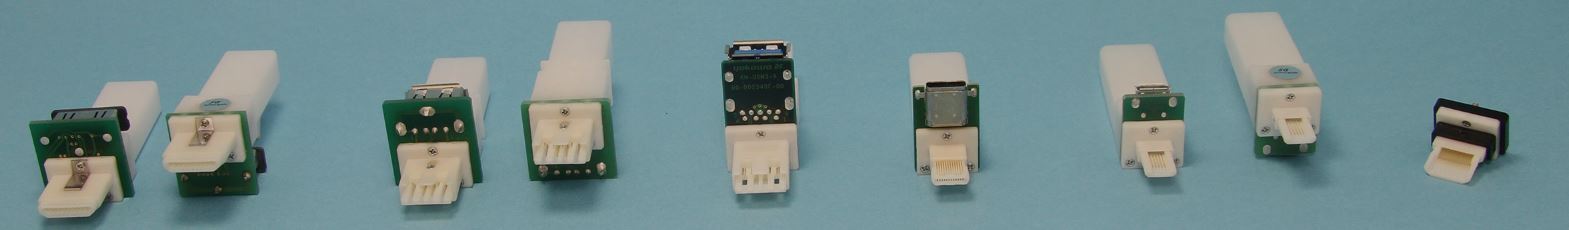 Interface connectoren voor test